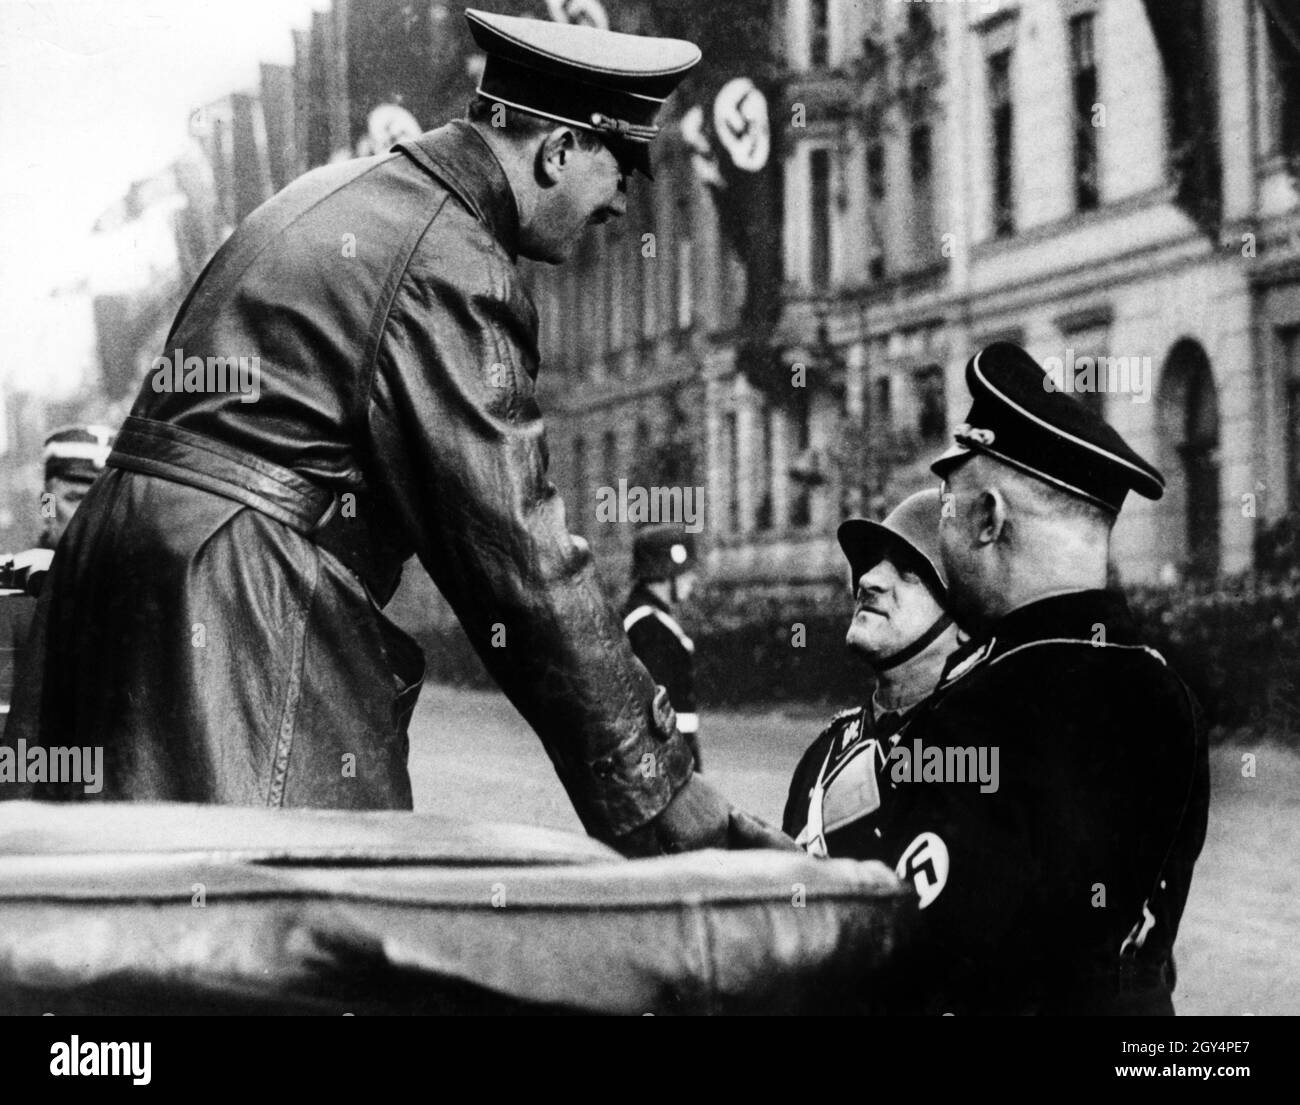 Adolf Hitler dankt dem Kommandanten der Leibstandarte Adolf Hitler, Obergruppenführer Sepp Dietrich, für die Parade zu seinem Geburtstag. Reichsführer SS Heinrich Himmler steht zur Verfügung. [Automatisierte Übersetzung] Stockfoto